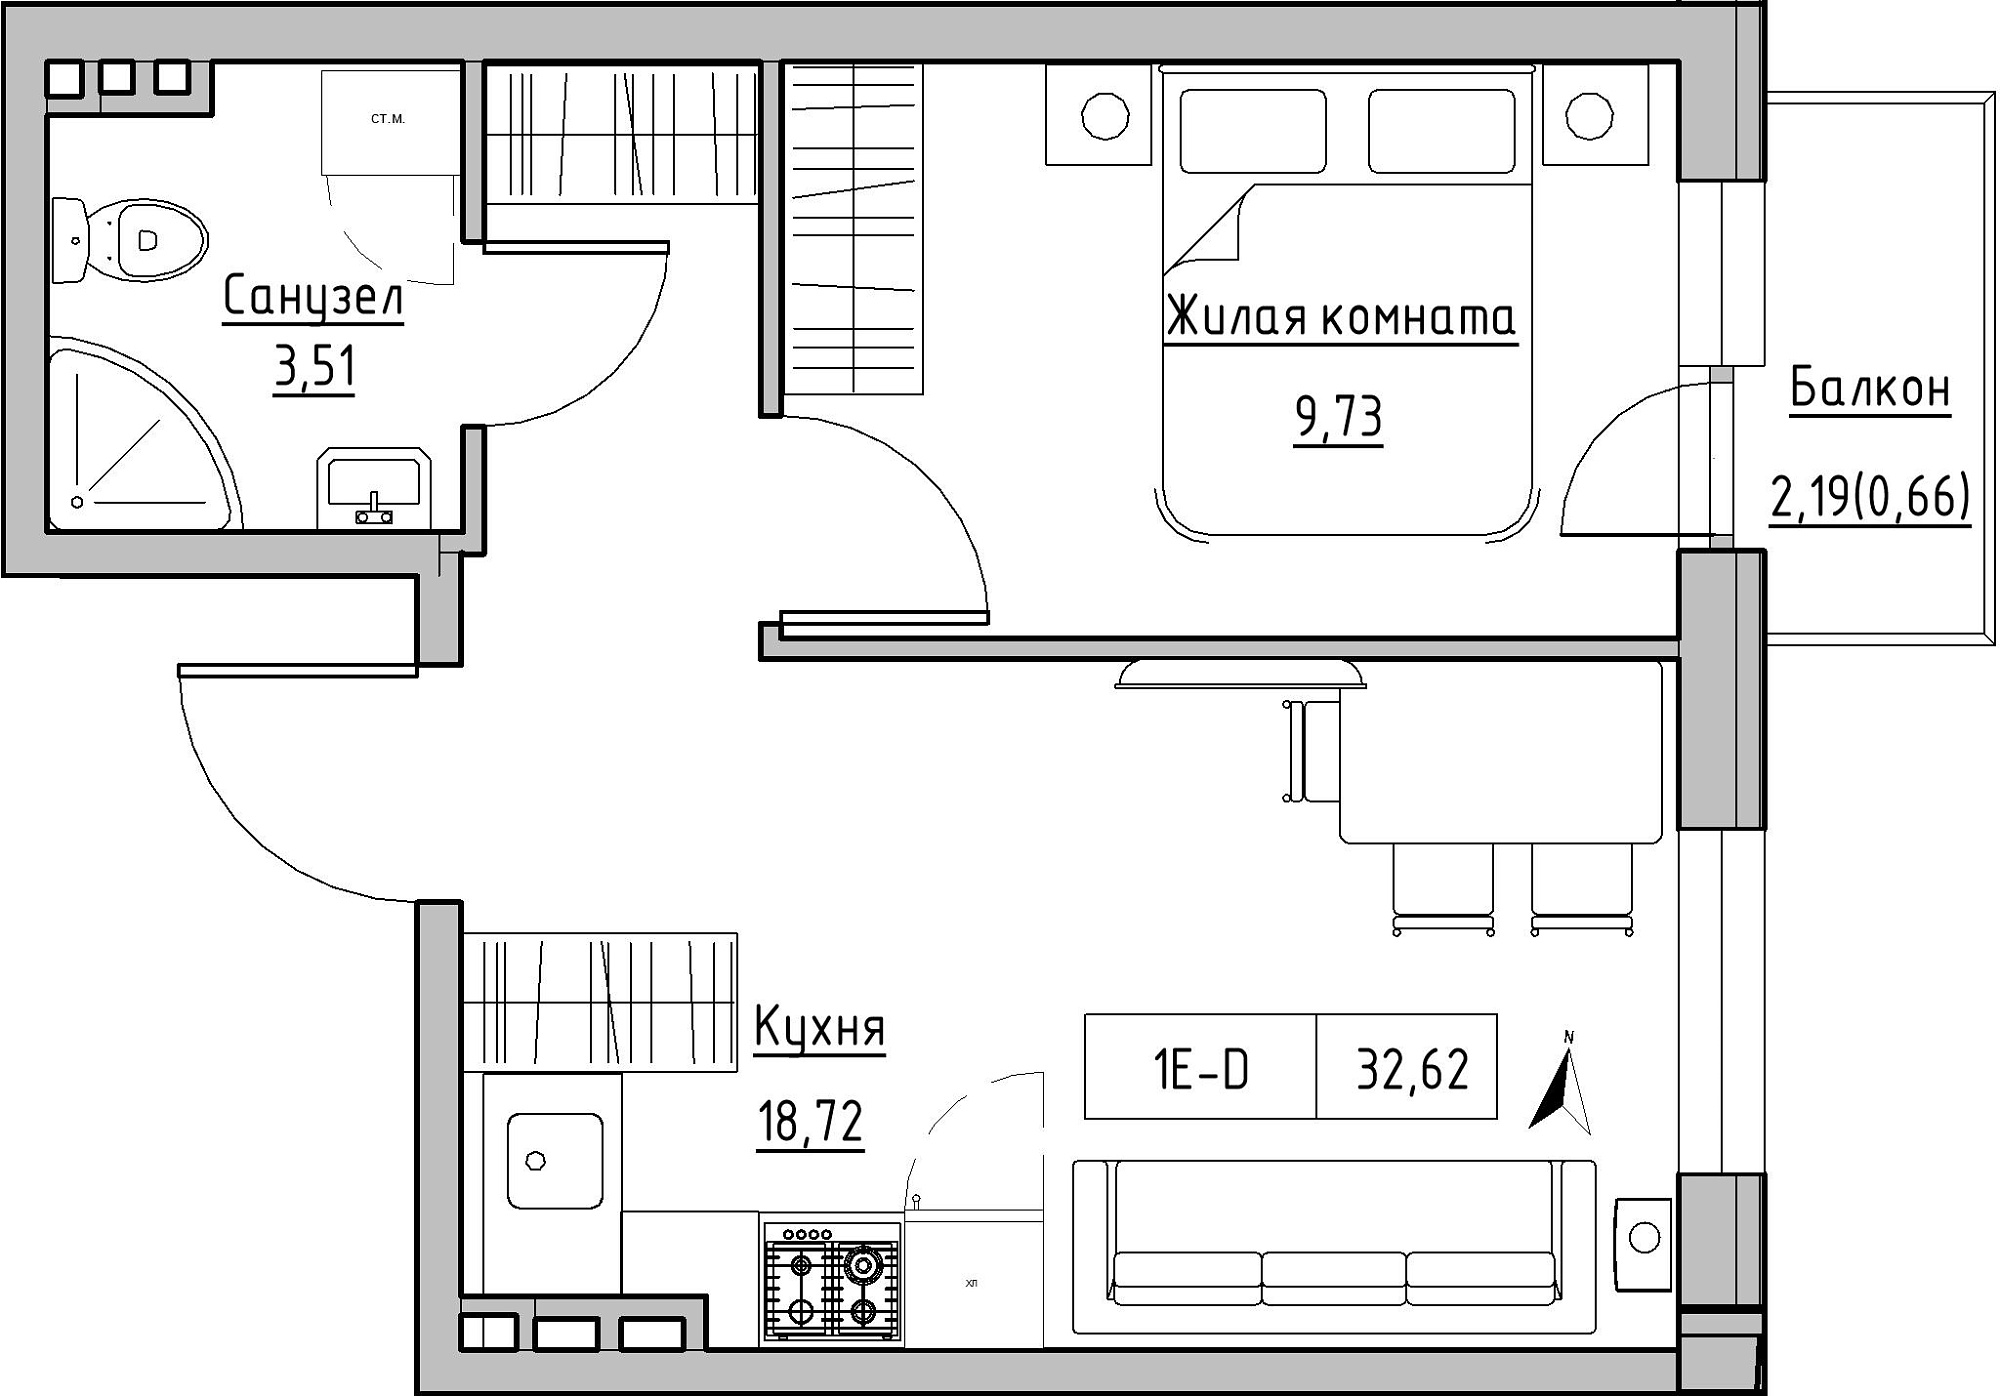 Планировка 1-к квартира площей 32.62м2, KS-024-02/0013.